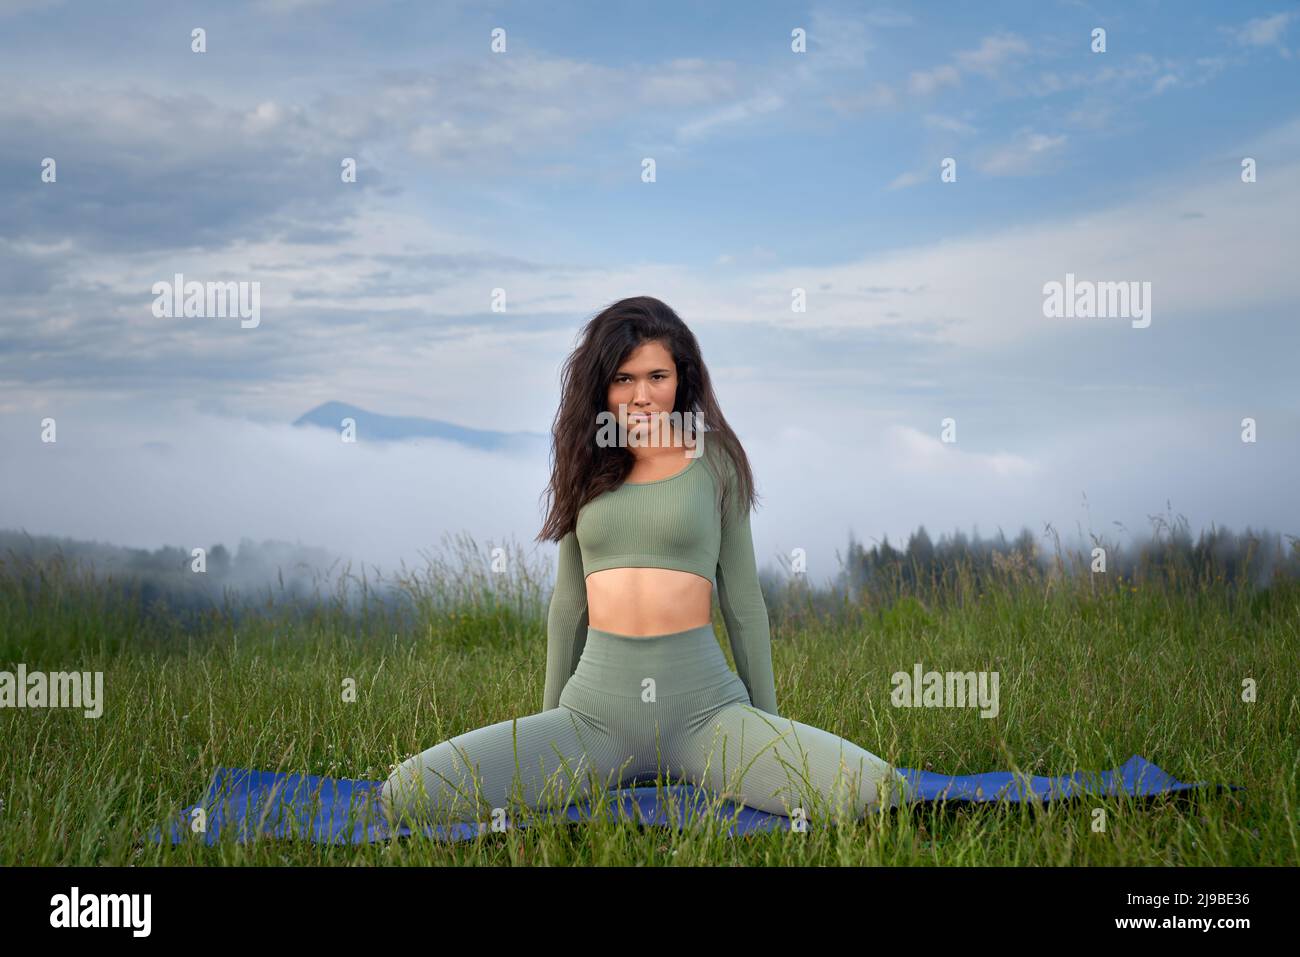 Schöne junge Frau mit dunklem Haar, die sich auf einer Yogamatte mit Bergen im Hintergrund ausdehnt. Aktive weibliche Person, die in der Freizeit Aktivitäten im Freien genießt. Stockfoto